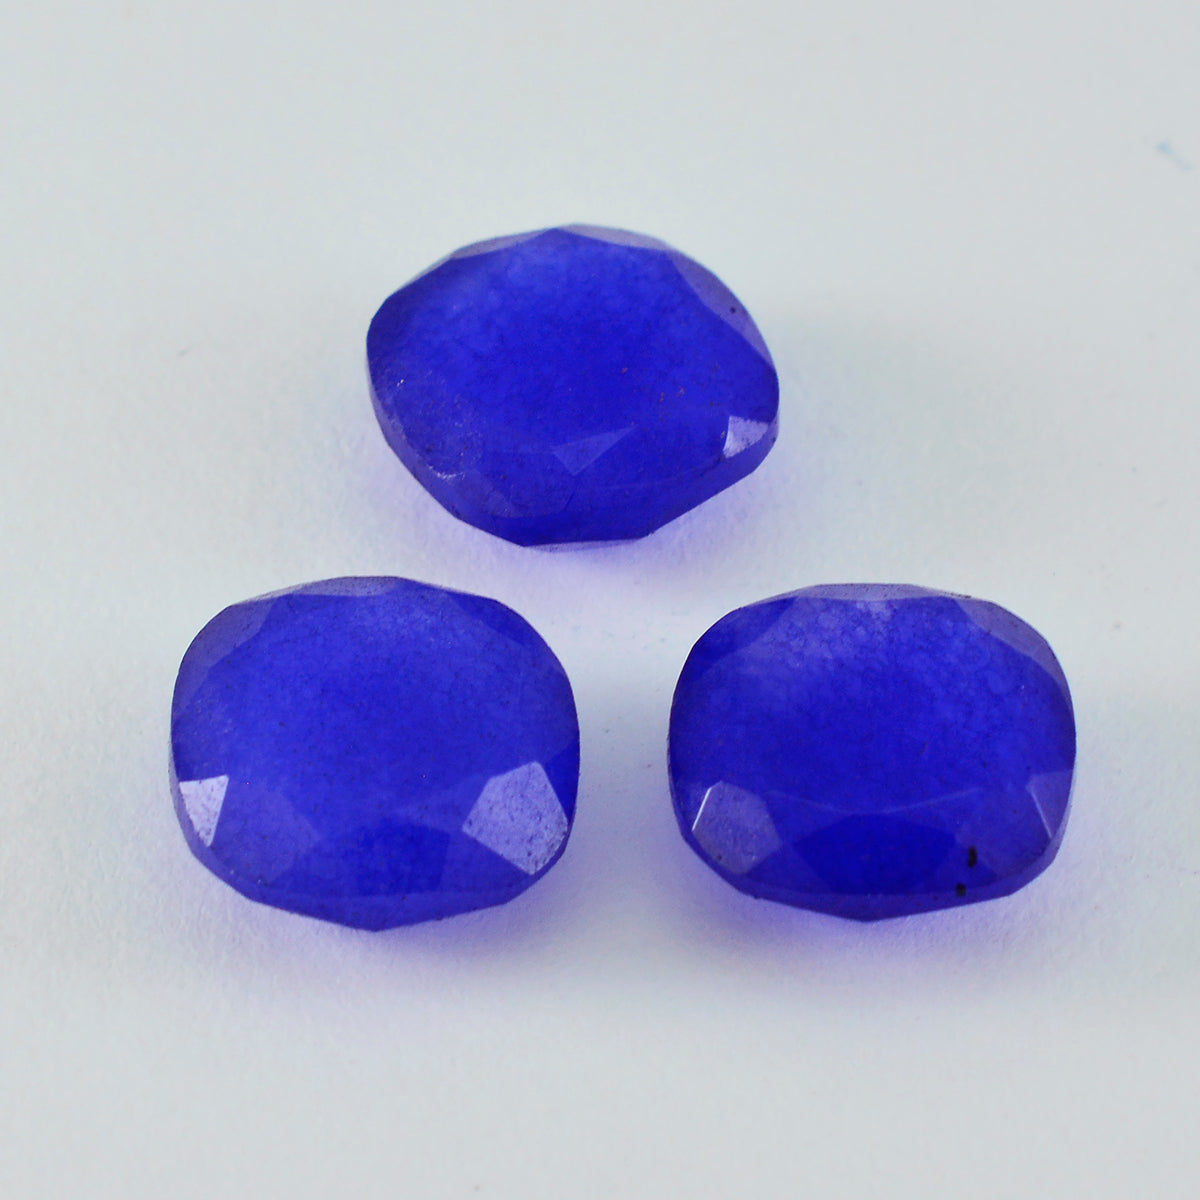 riyogems 1pc véritable jaspe bleu à facettes 11x11 mm forme coussin a1 gemme de qualité